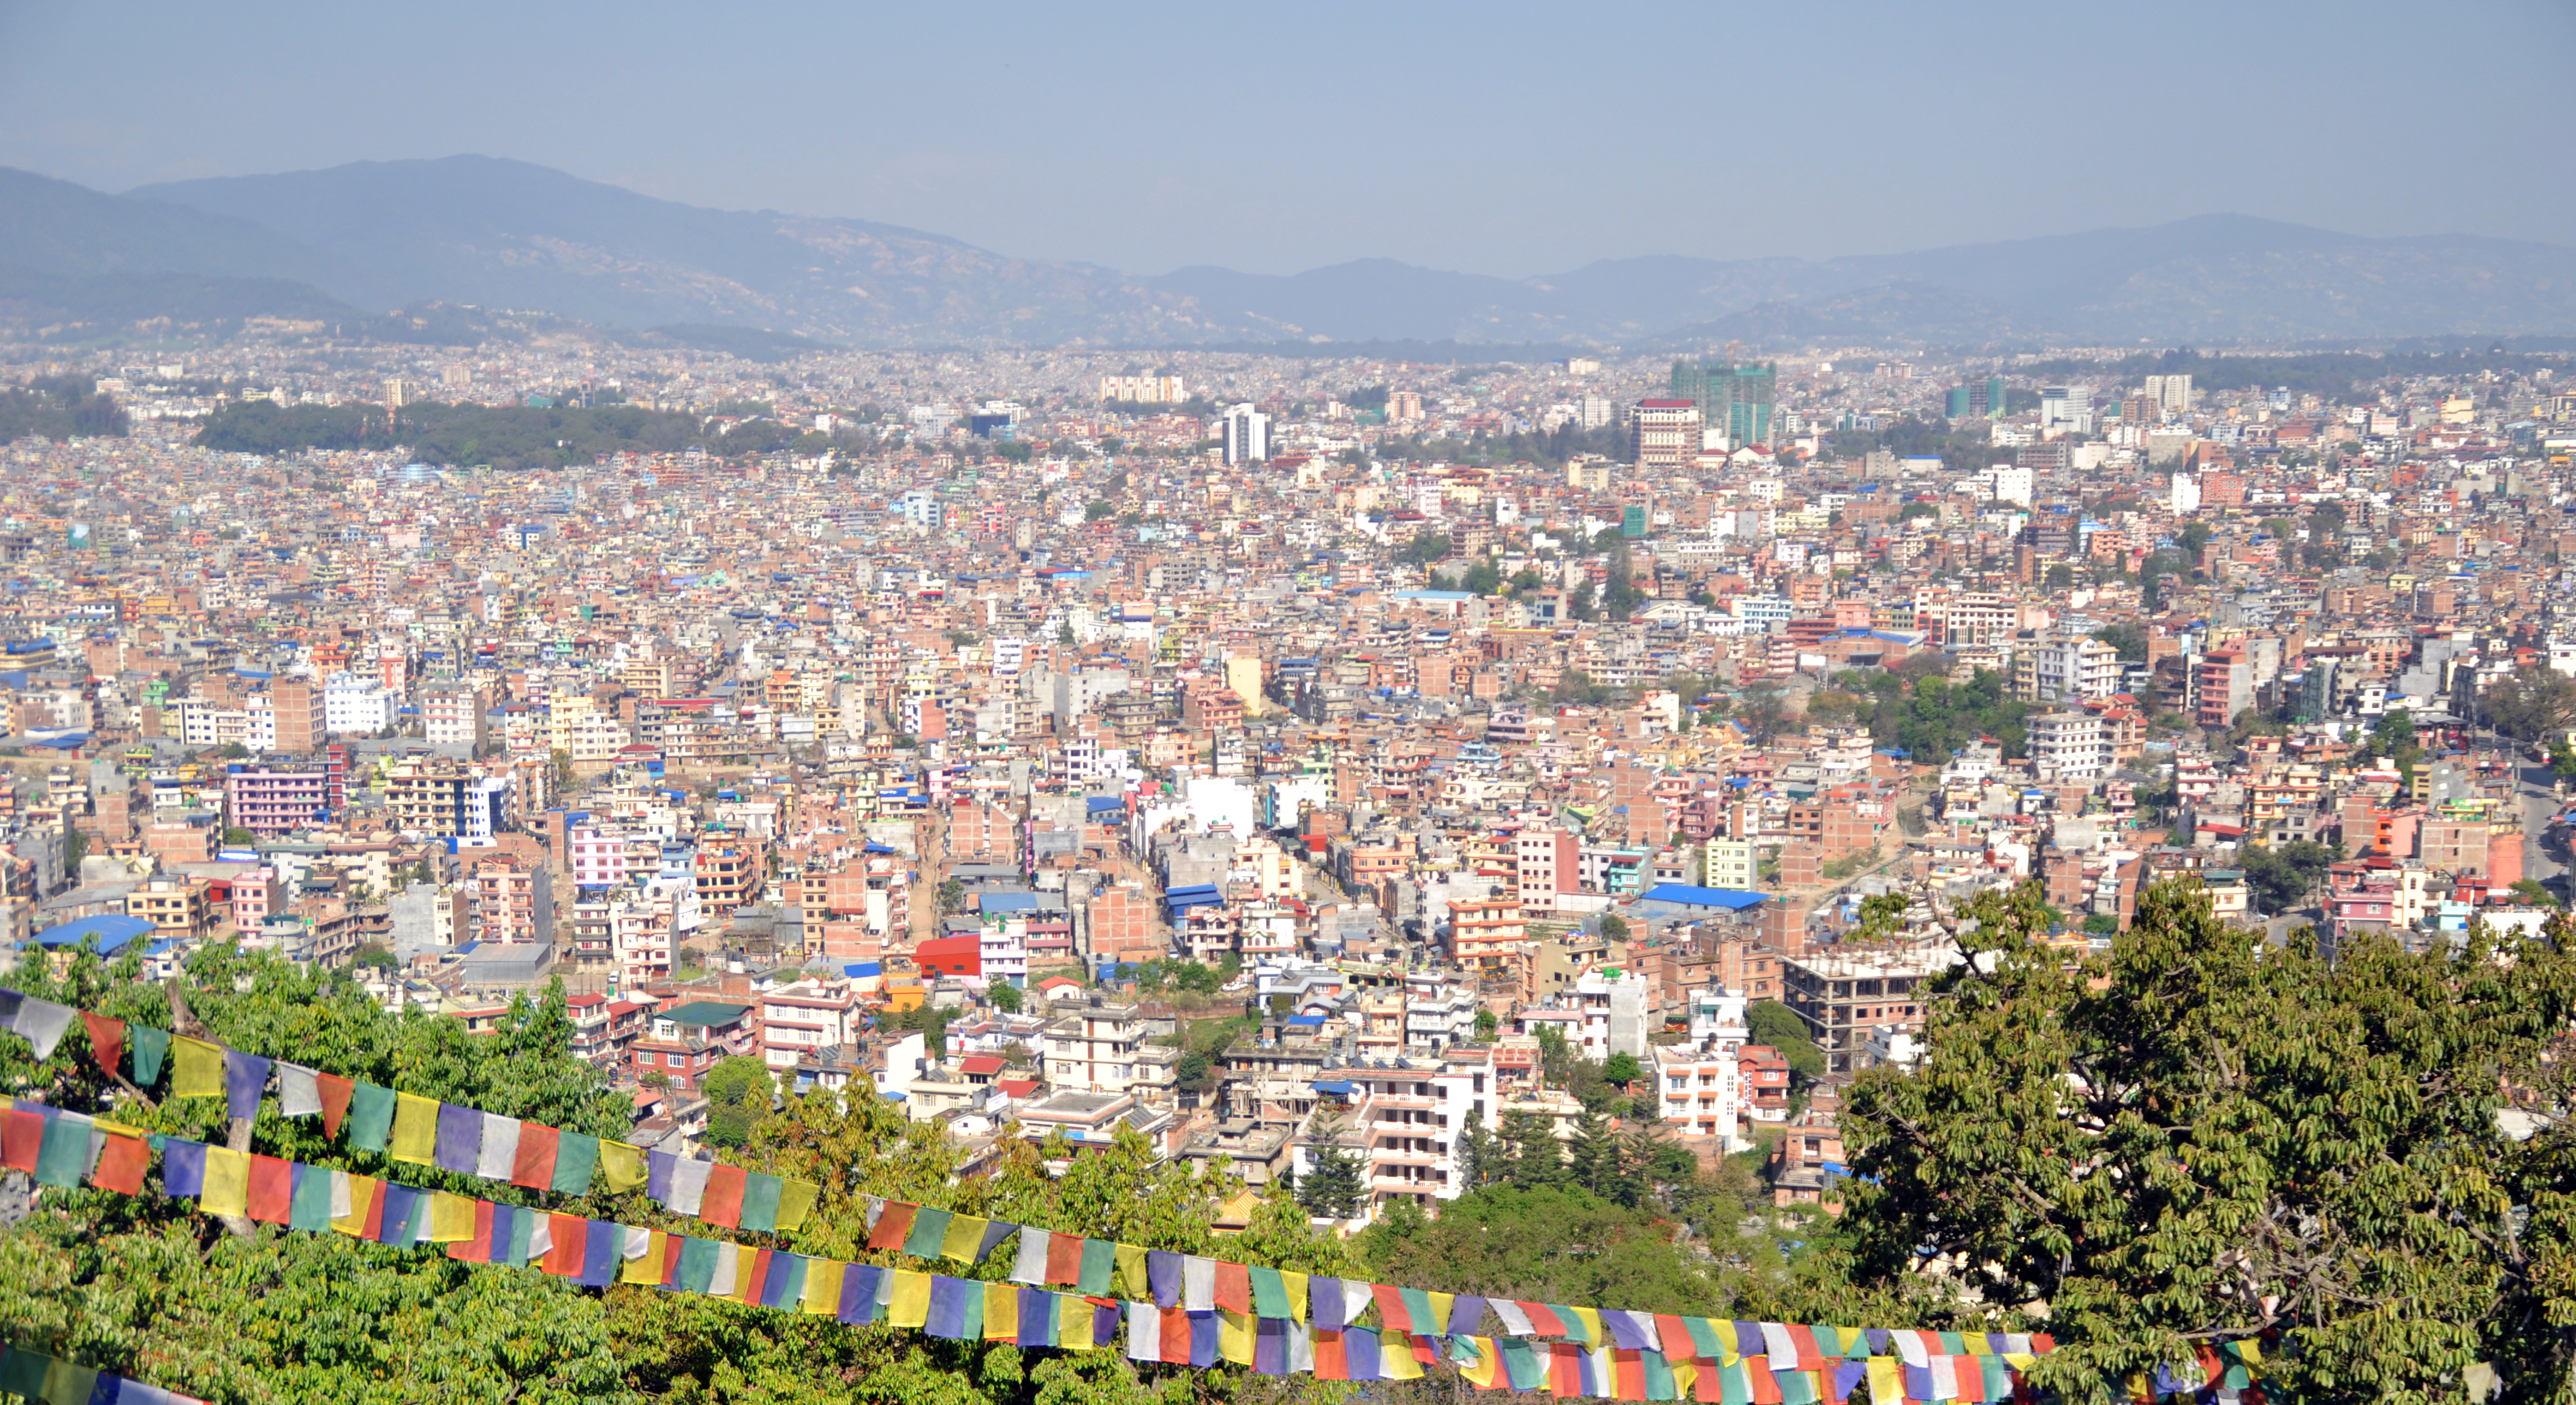 काठमाडौँसहित देशभर वायुको गुणस्तरमा सुधार